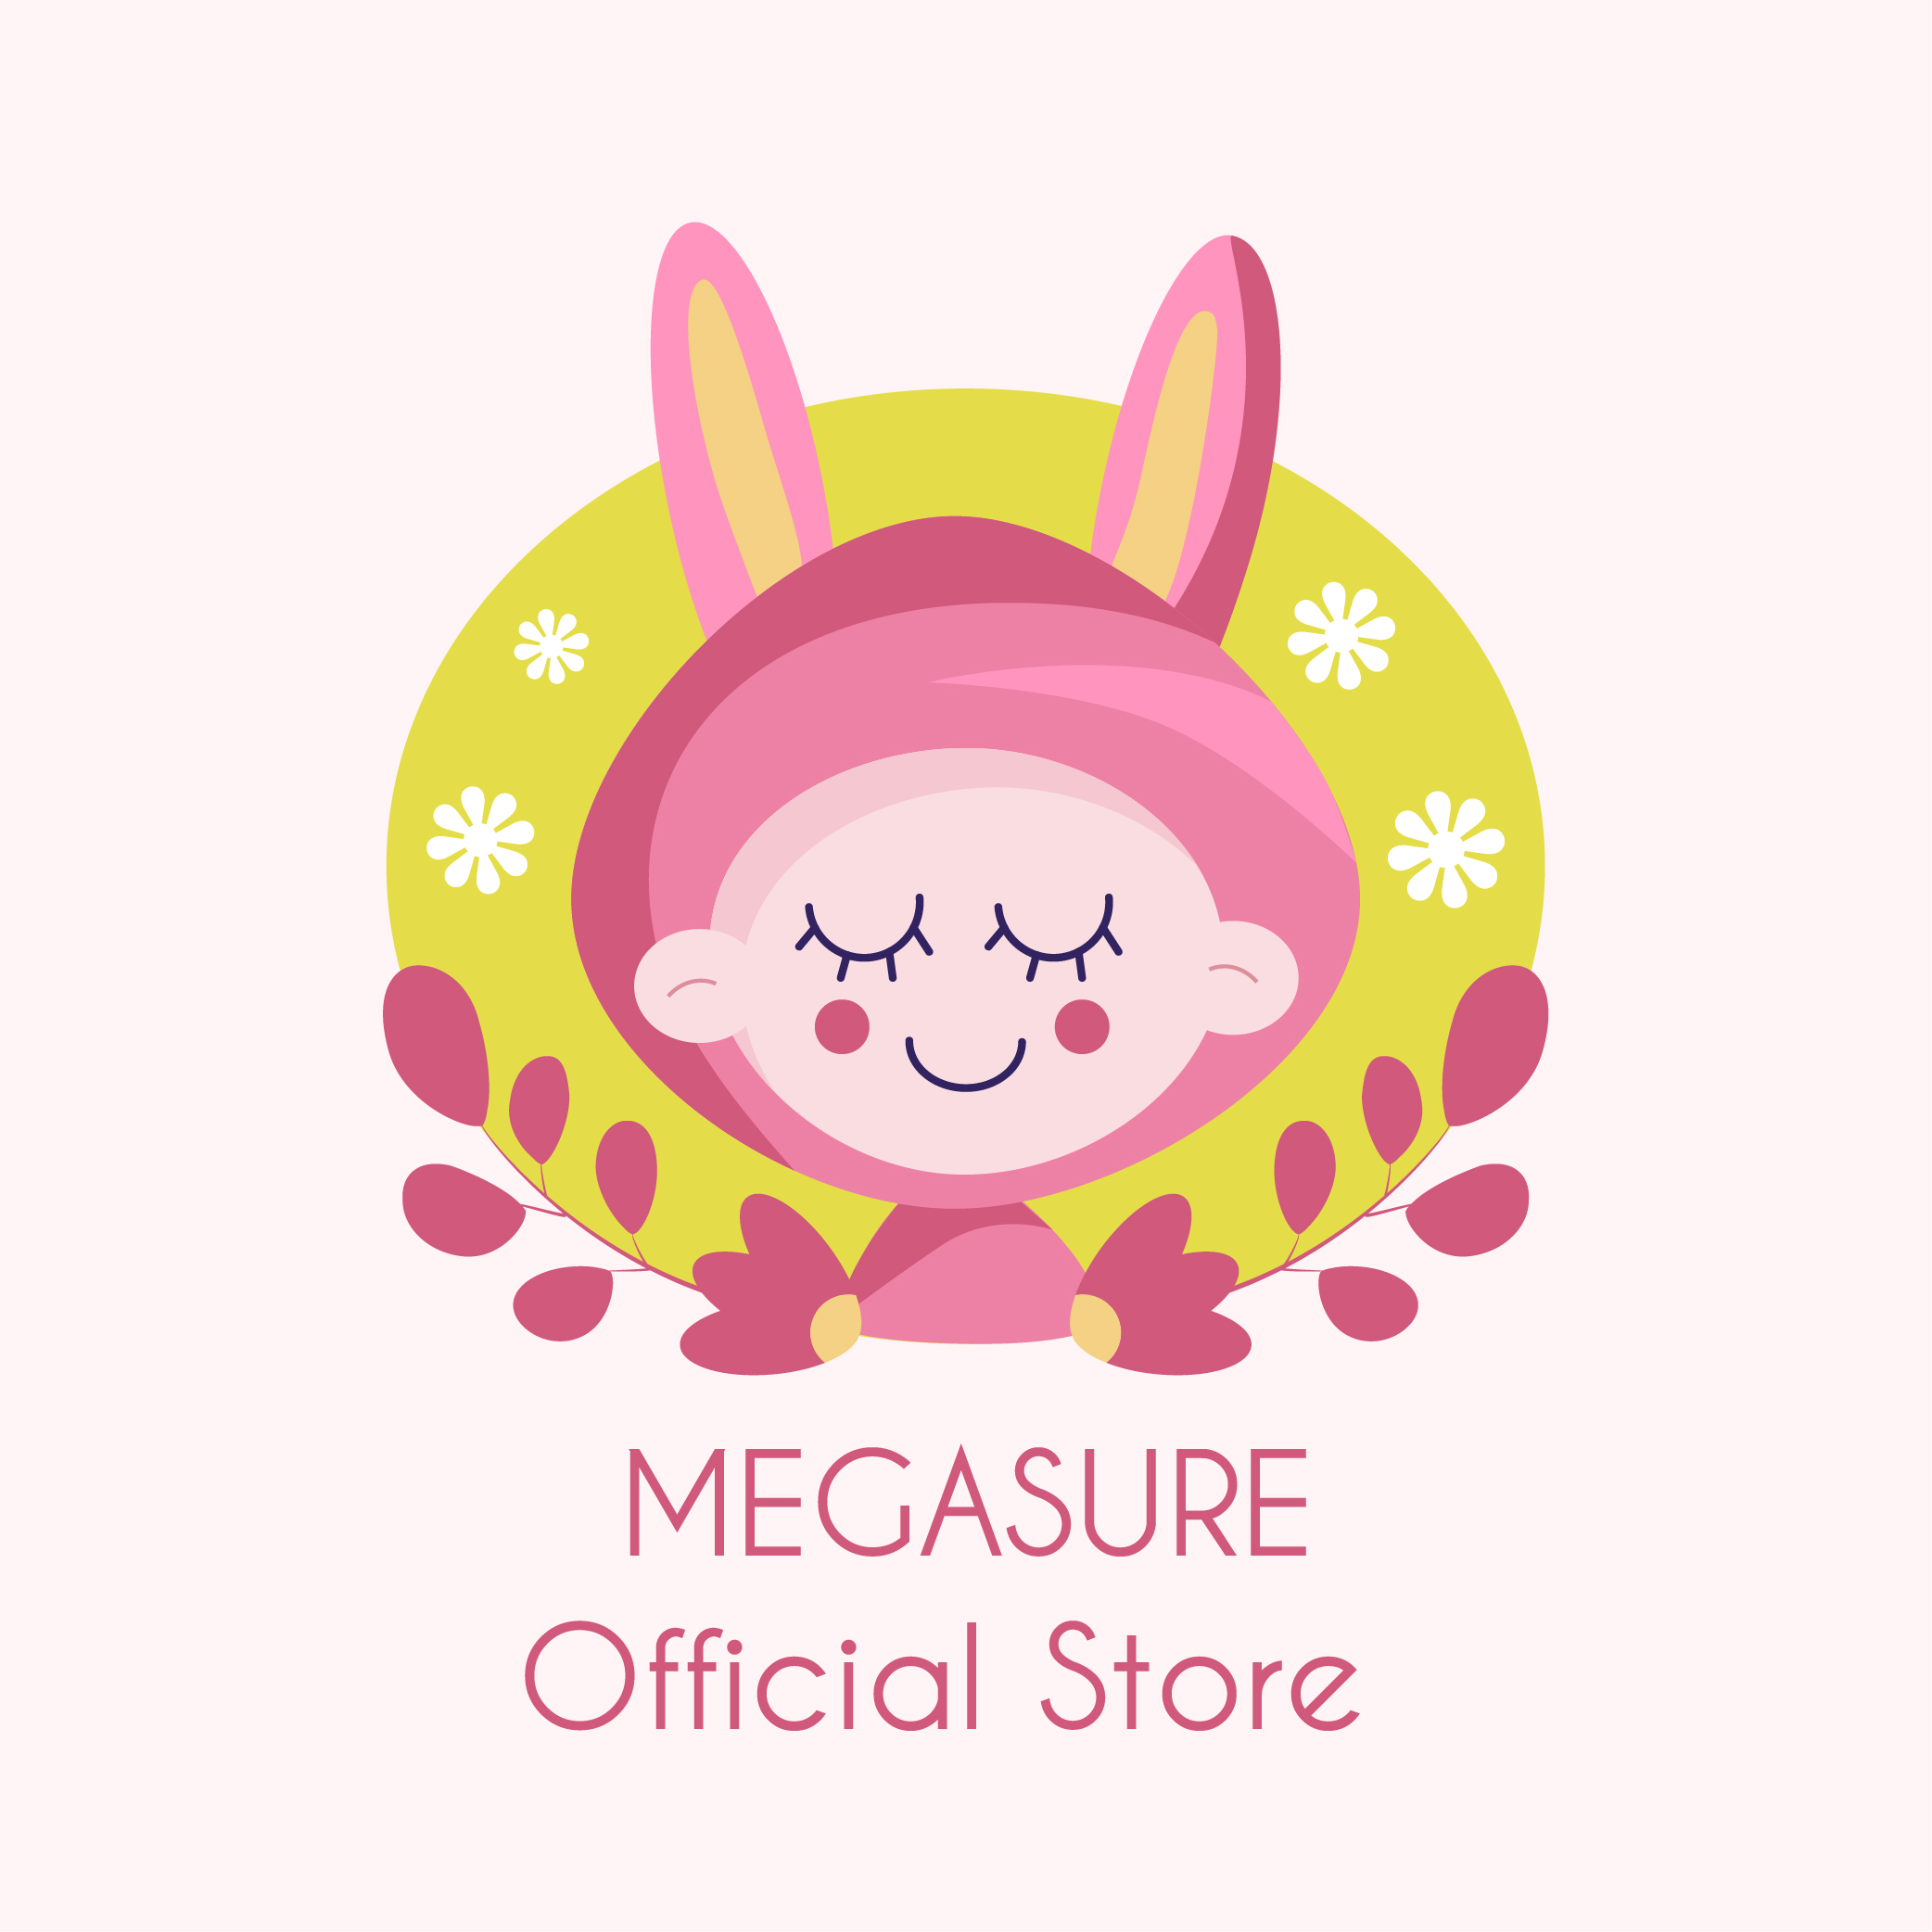 MEGASURE Store